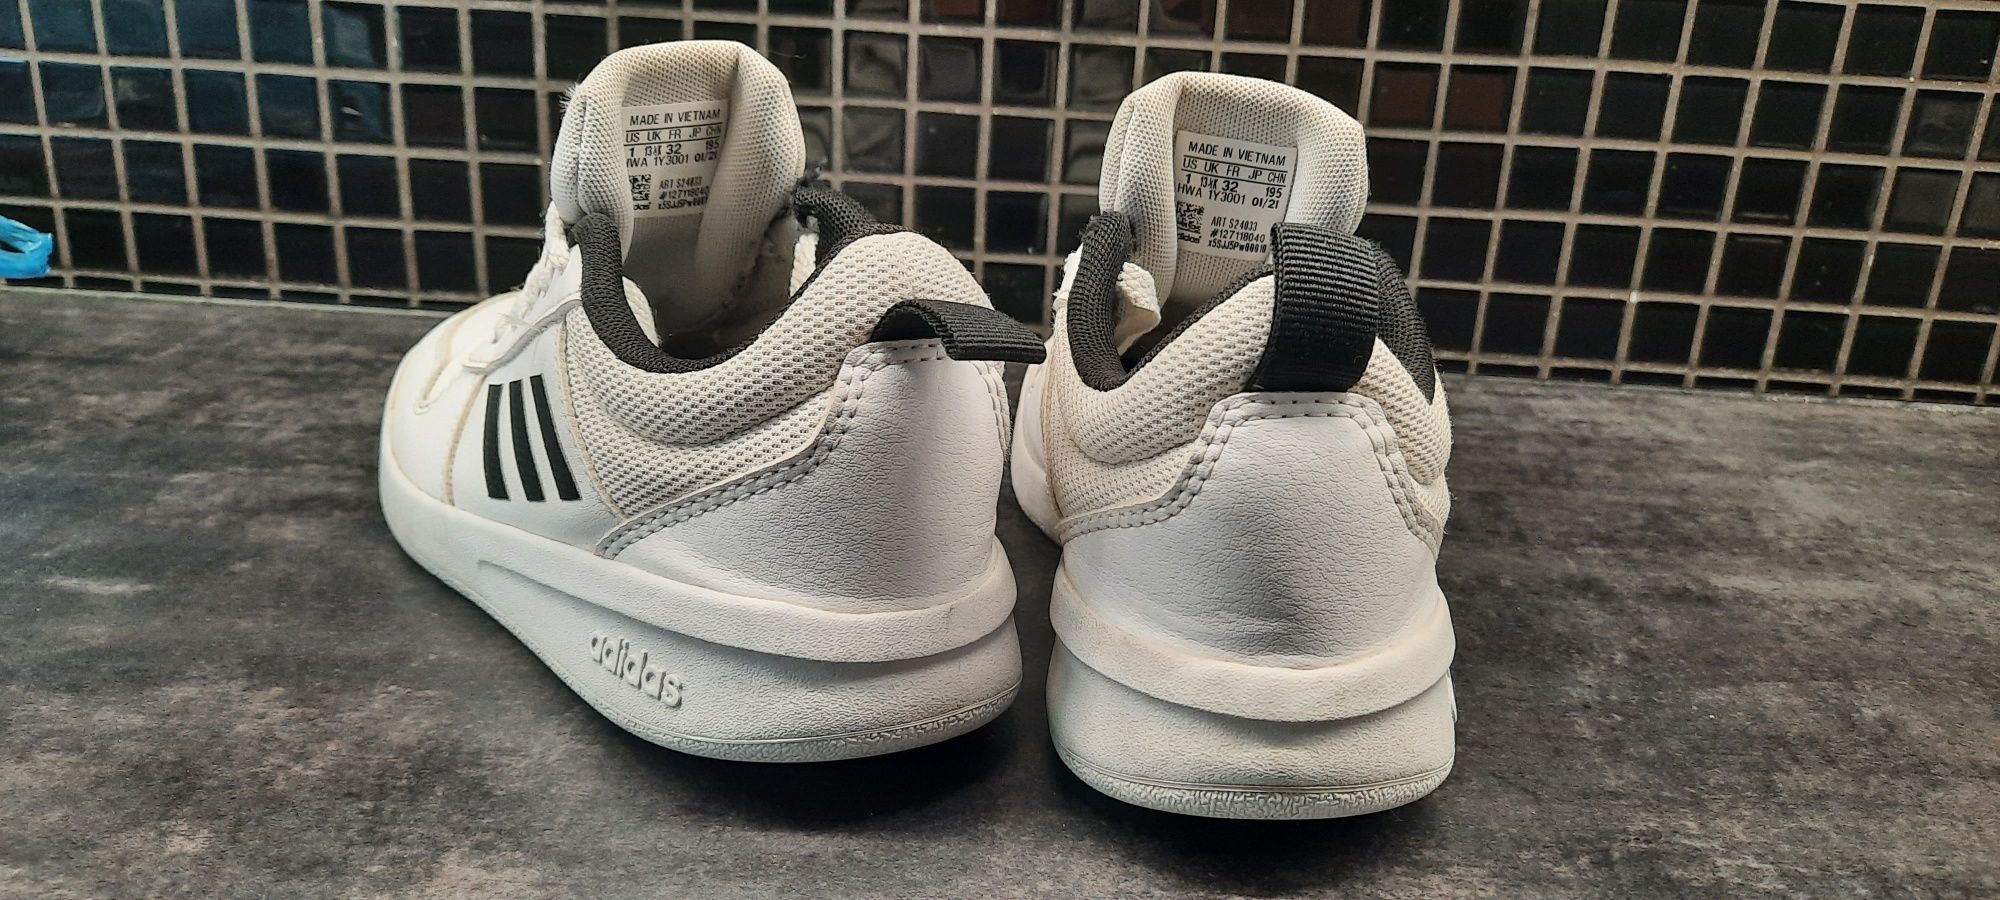 Adidas dziecięce r. 32 buty sneakersy